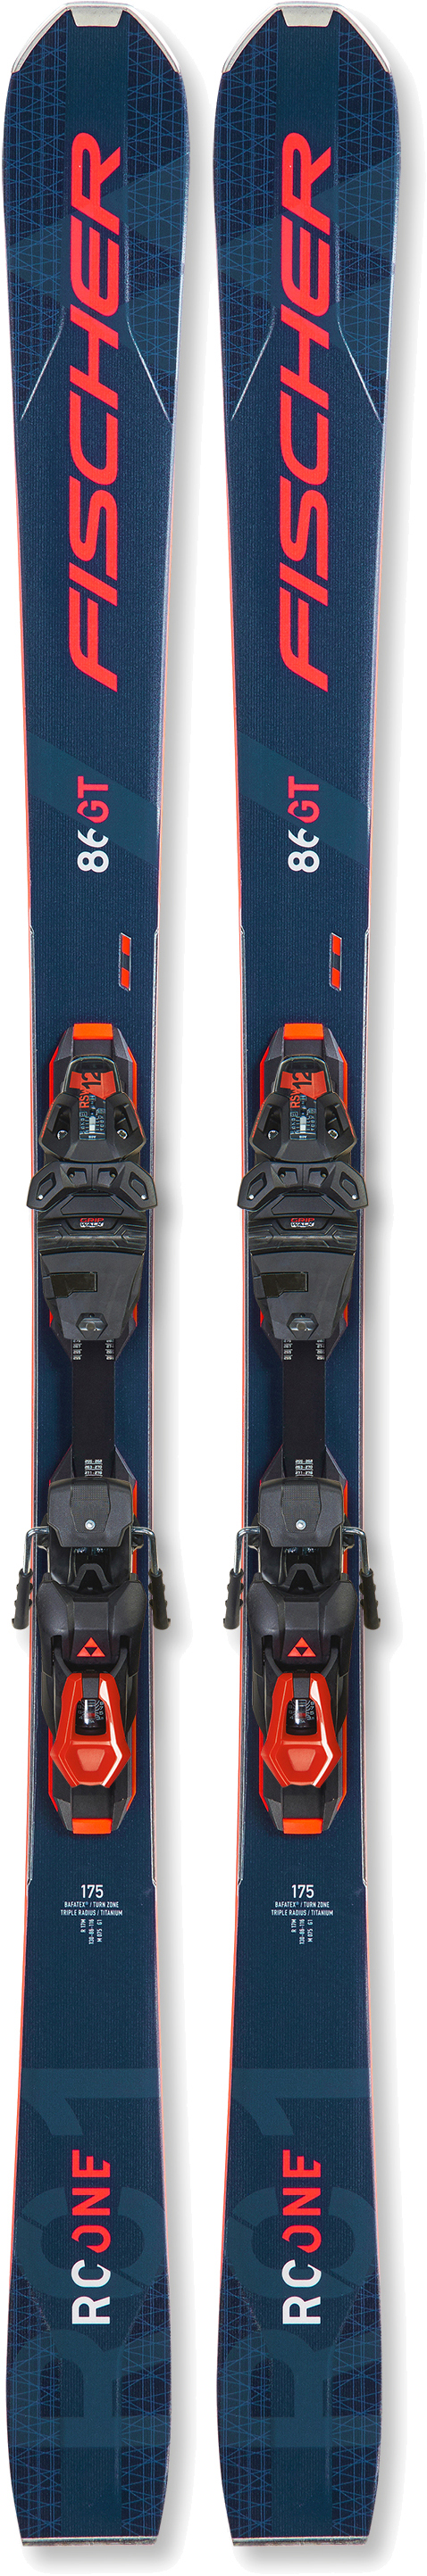 Лыжи для подготовленного склона Fischer RC ONE 86 GT MF + RSW 12 PR, T30621 161 см